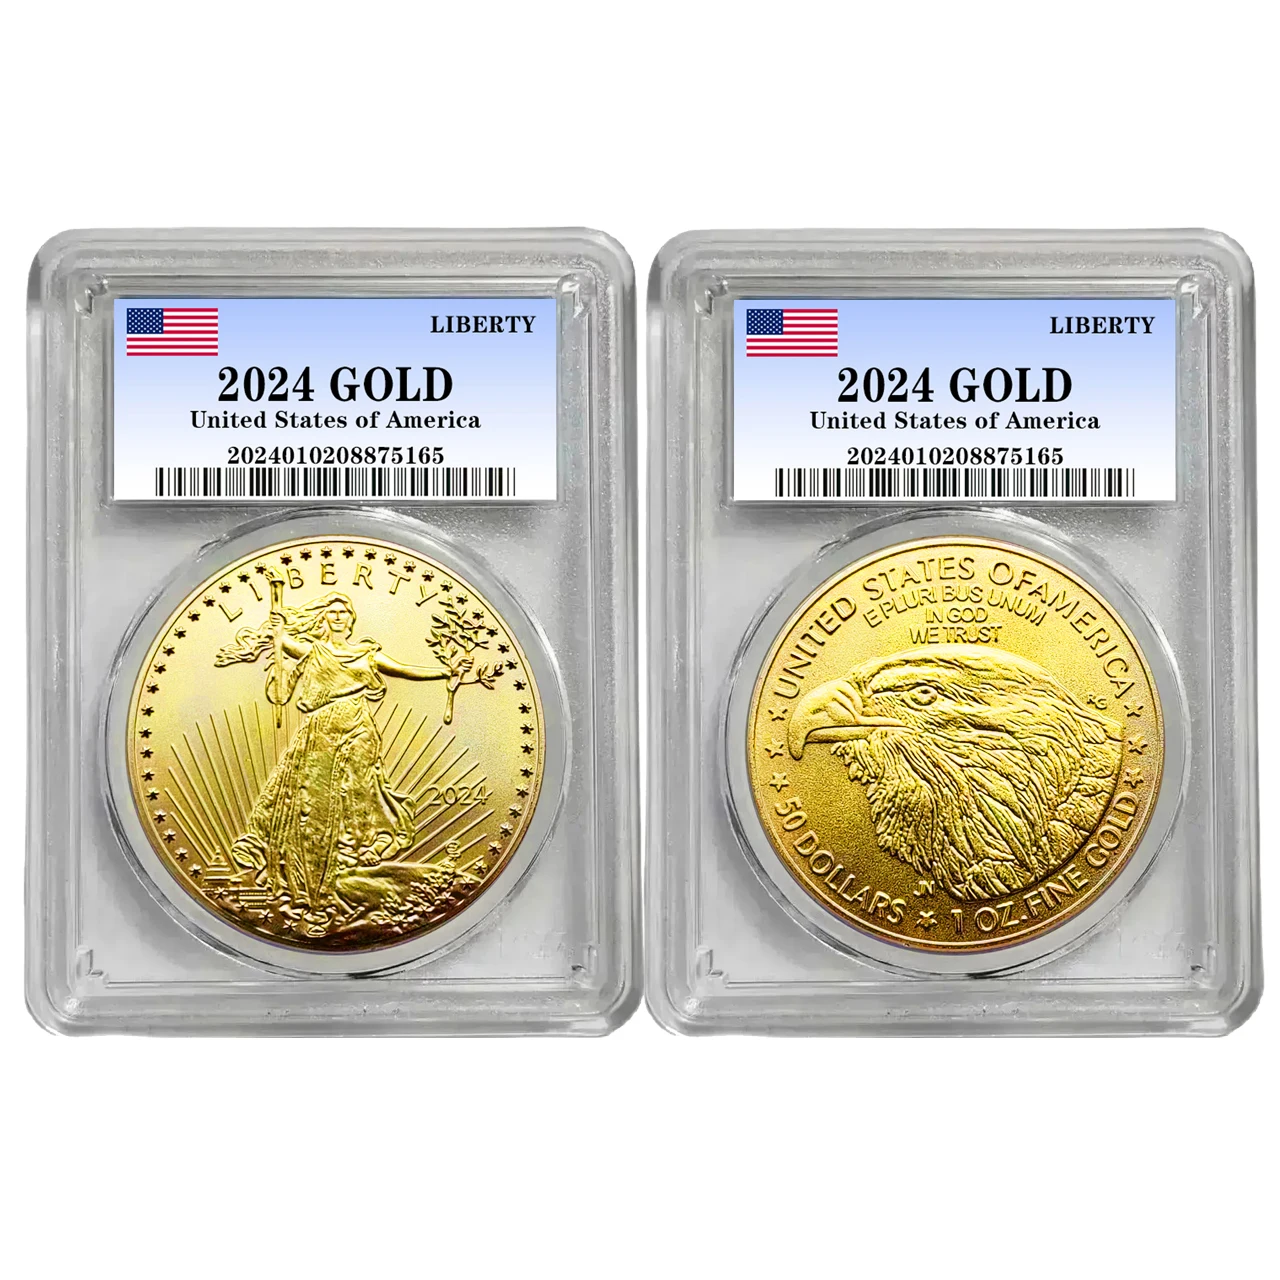 

NEW 2024 USA Liberty Eagle Morgan Dollar Coin American Gold Coin Collectibles Art Creative Home Decor Coins